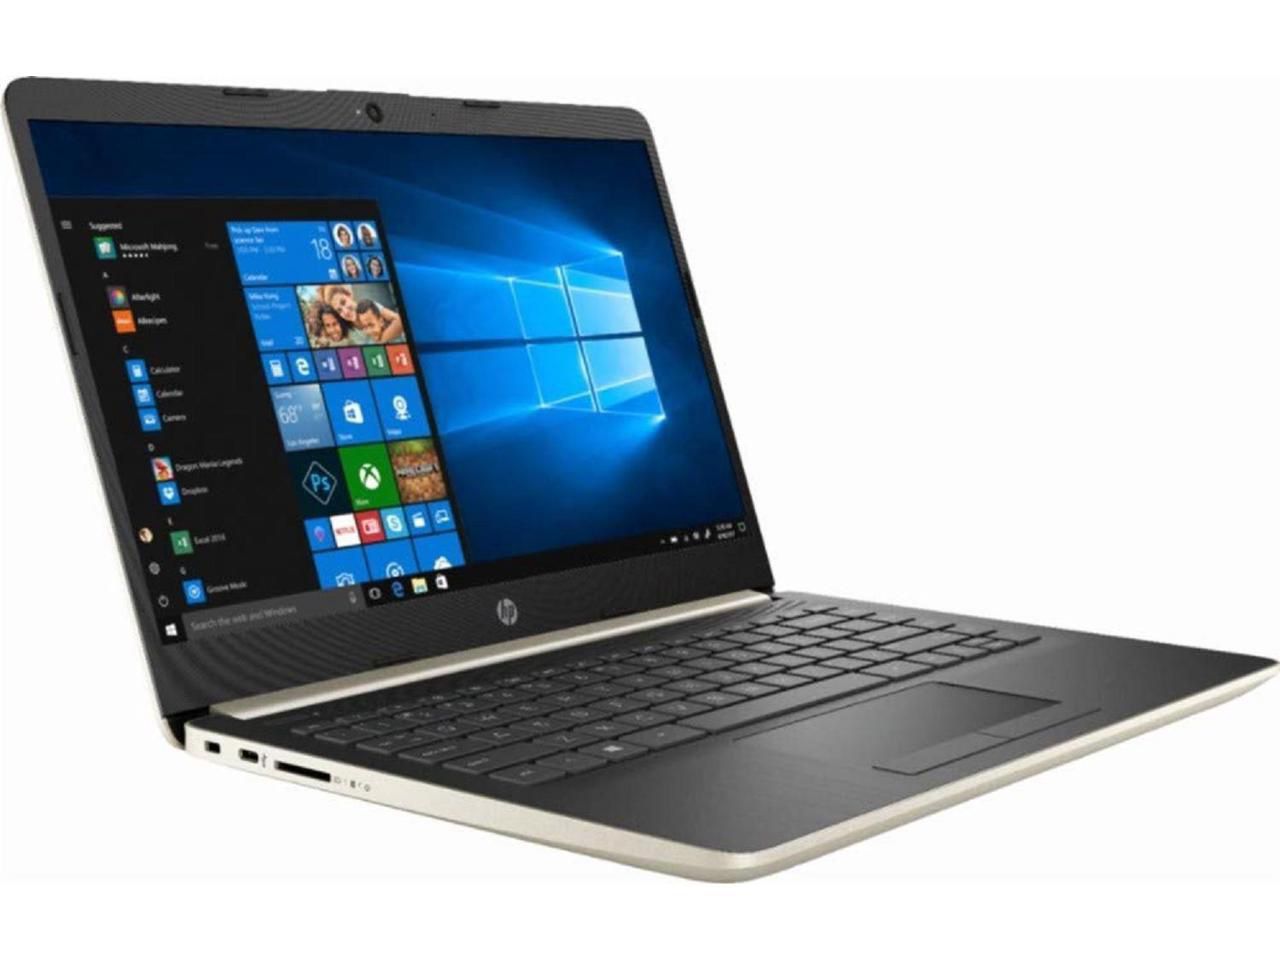 Refurbished HP laptop 4 GB Core i3 Laptop